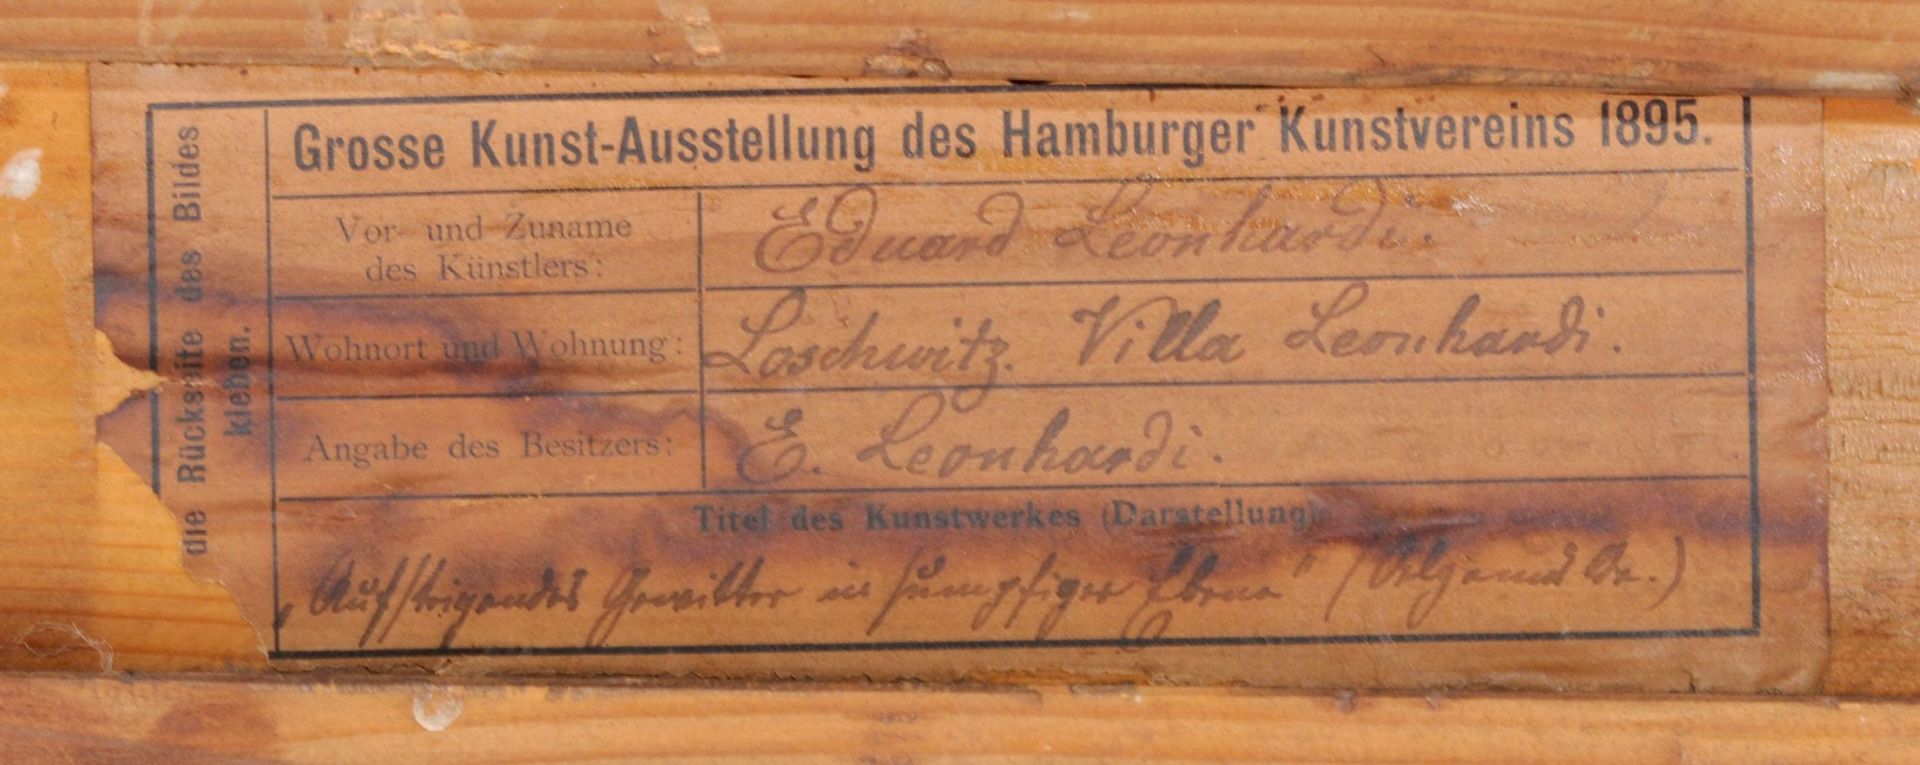 Eduard Emil August Leonhardi "Aufsteigendes Gewitter in sumpfiger Ebene". 1894. - Bild 5 aus 5